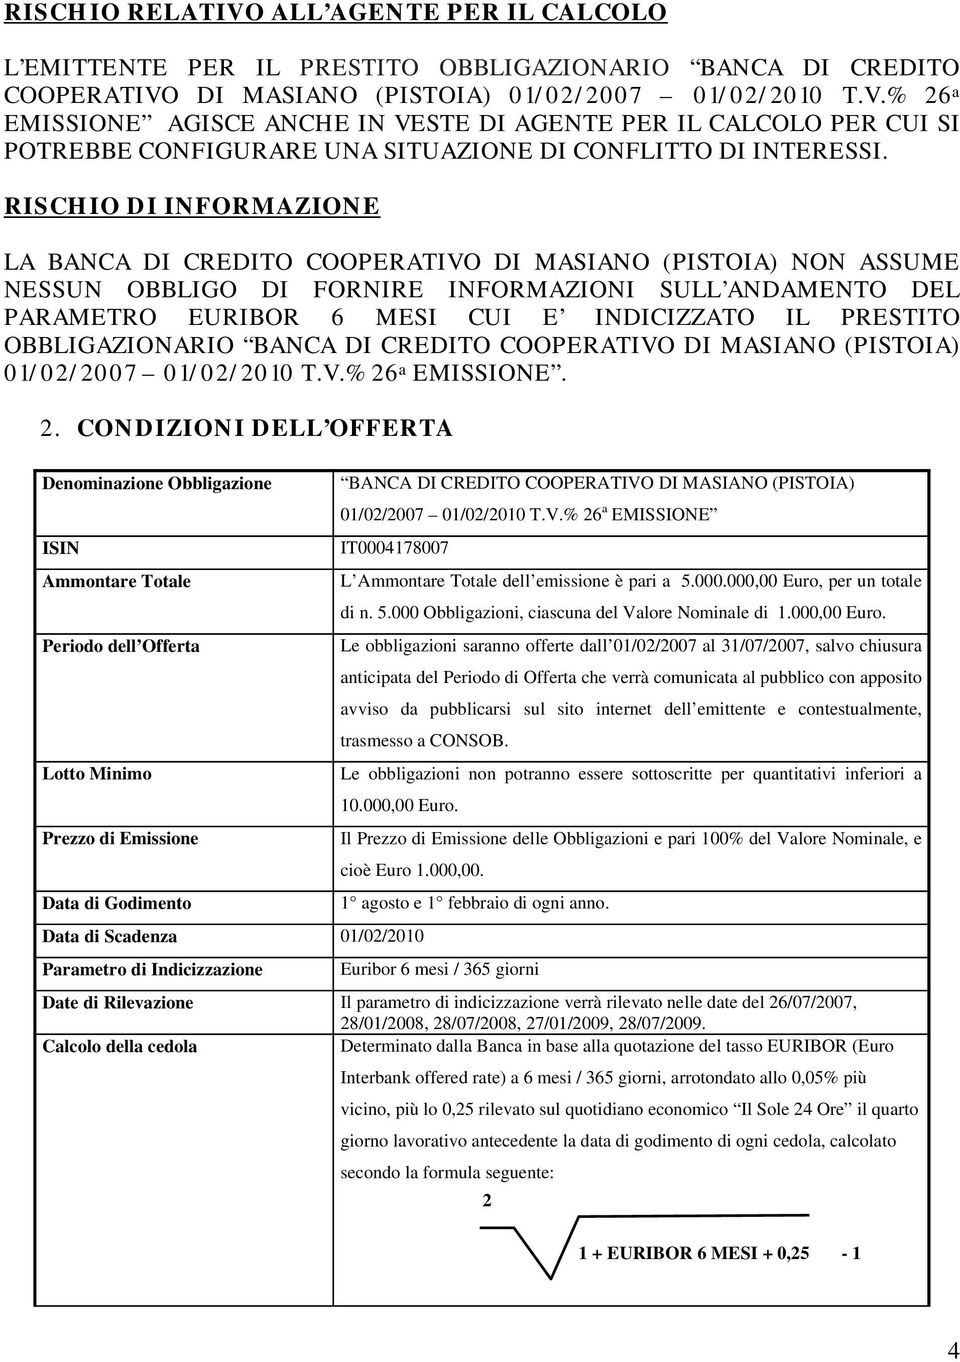 PRESTITO OBBLIGAZIONARIO BANCA DI CREDITO COOPERATIVO DI MASIANO (PISTOIA) 01/02/2007 01/02/2010 T.V.% 26